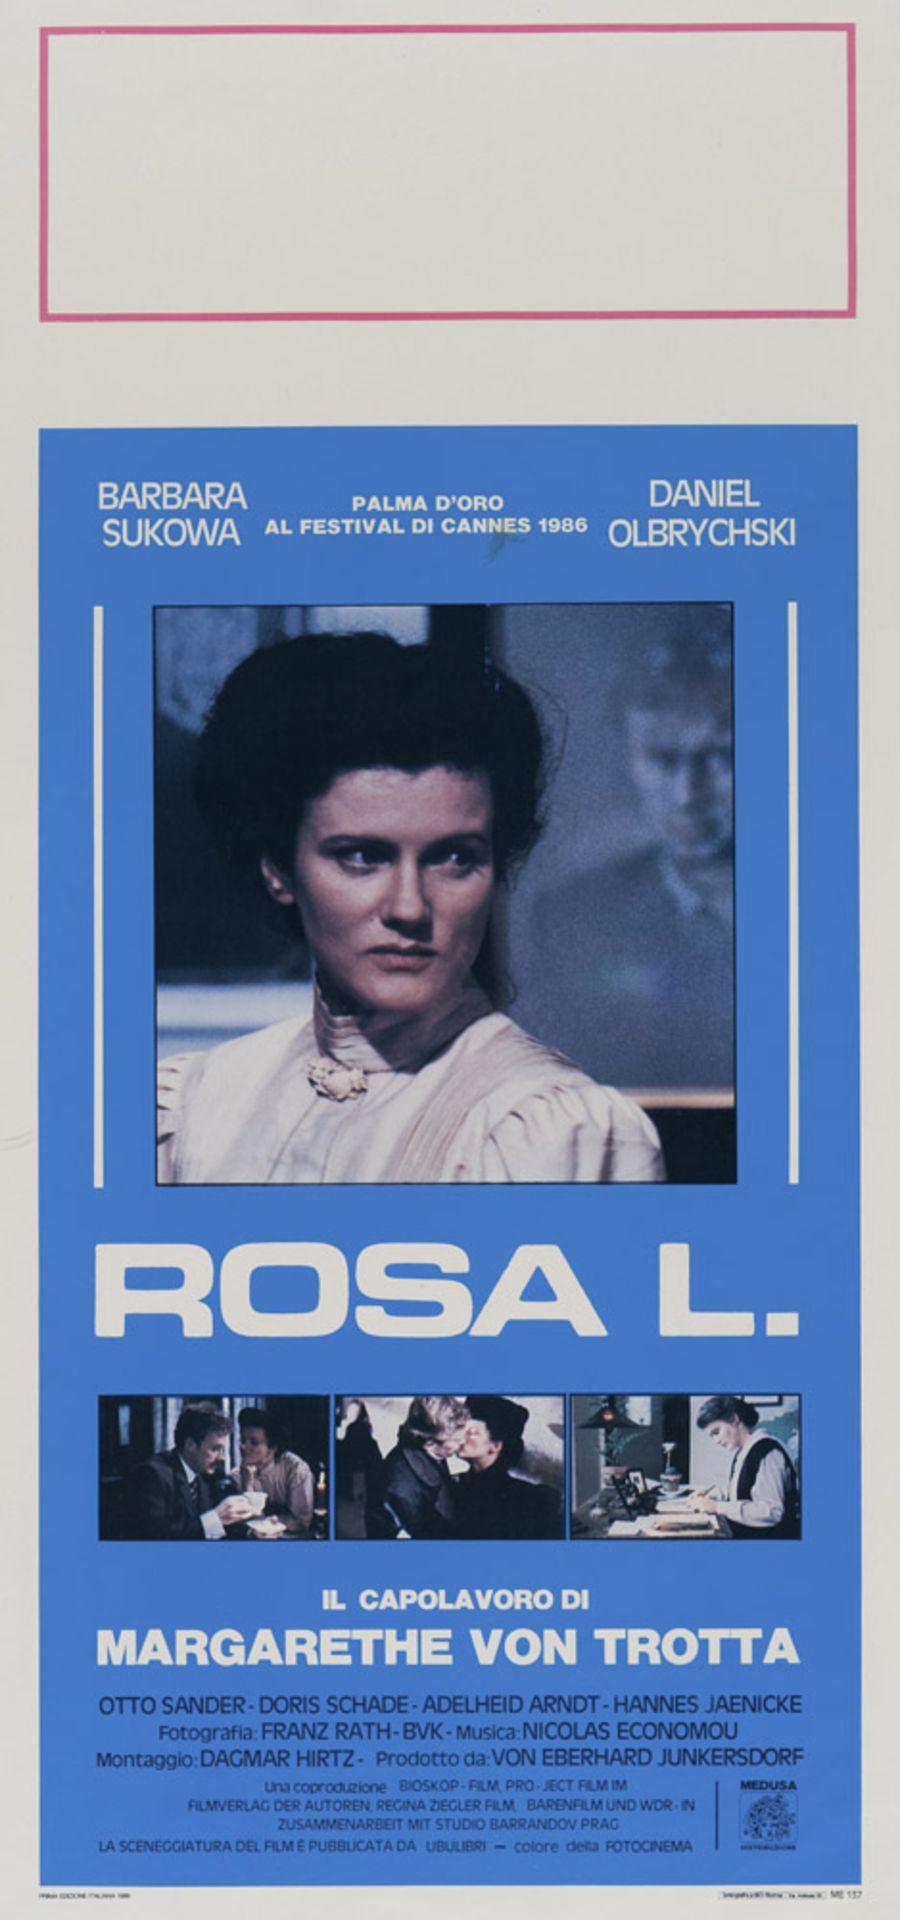 ROSA L. Manifesto del film diretto da Margarethe von Trotta nel 1986. Fu presentato in concorso al